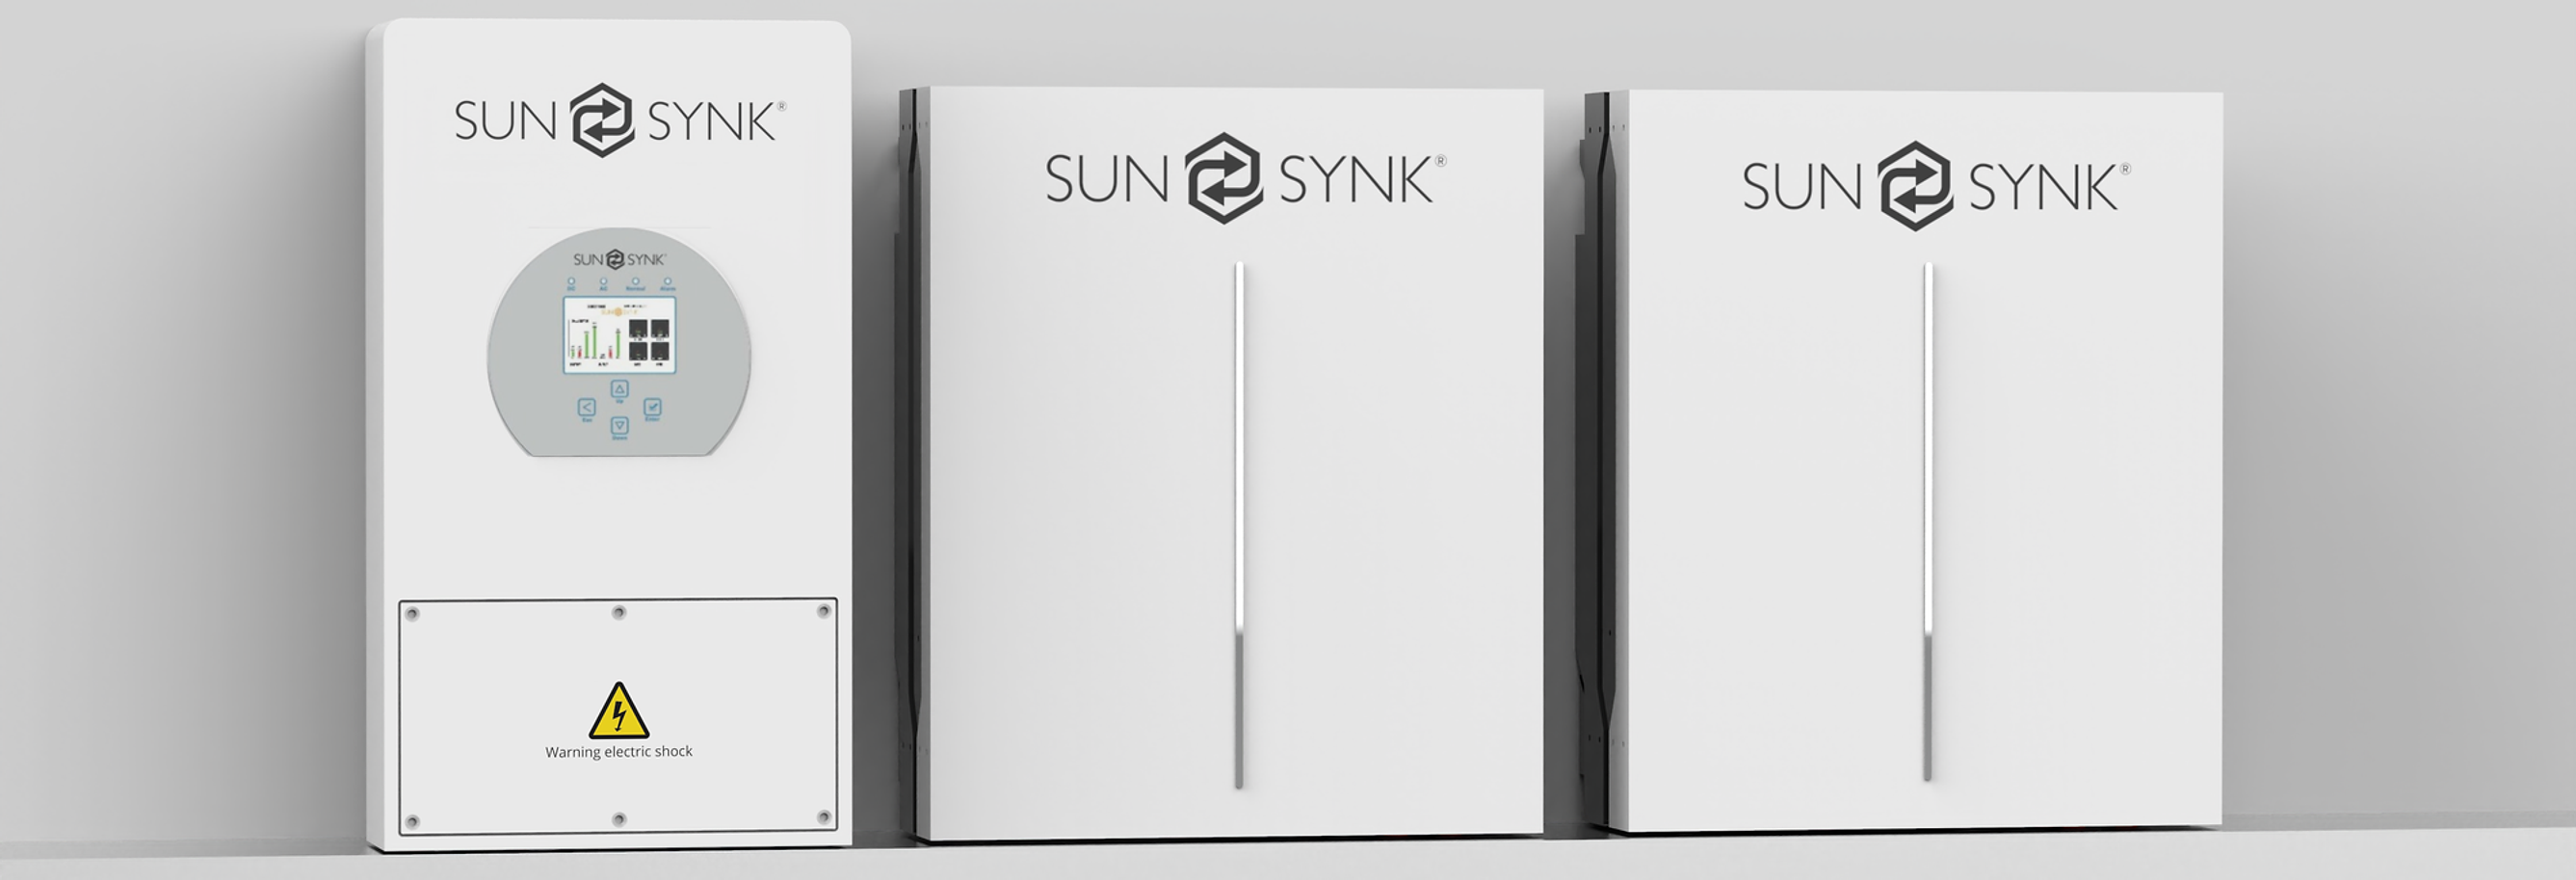 Sunsynk hybrid battery storage inverter